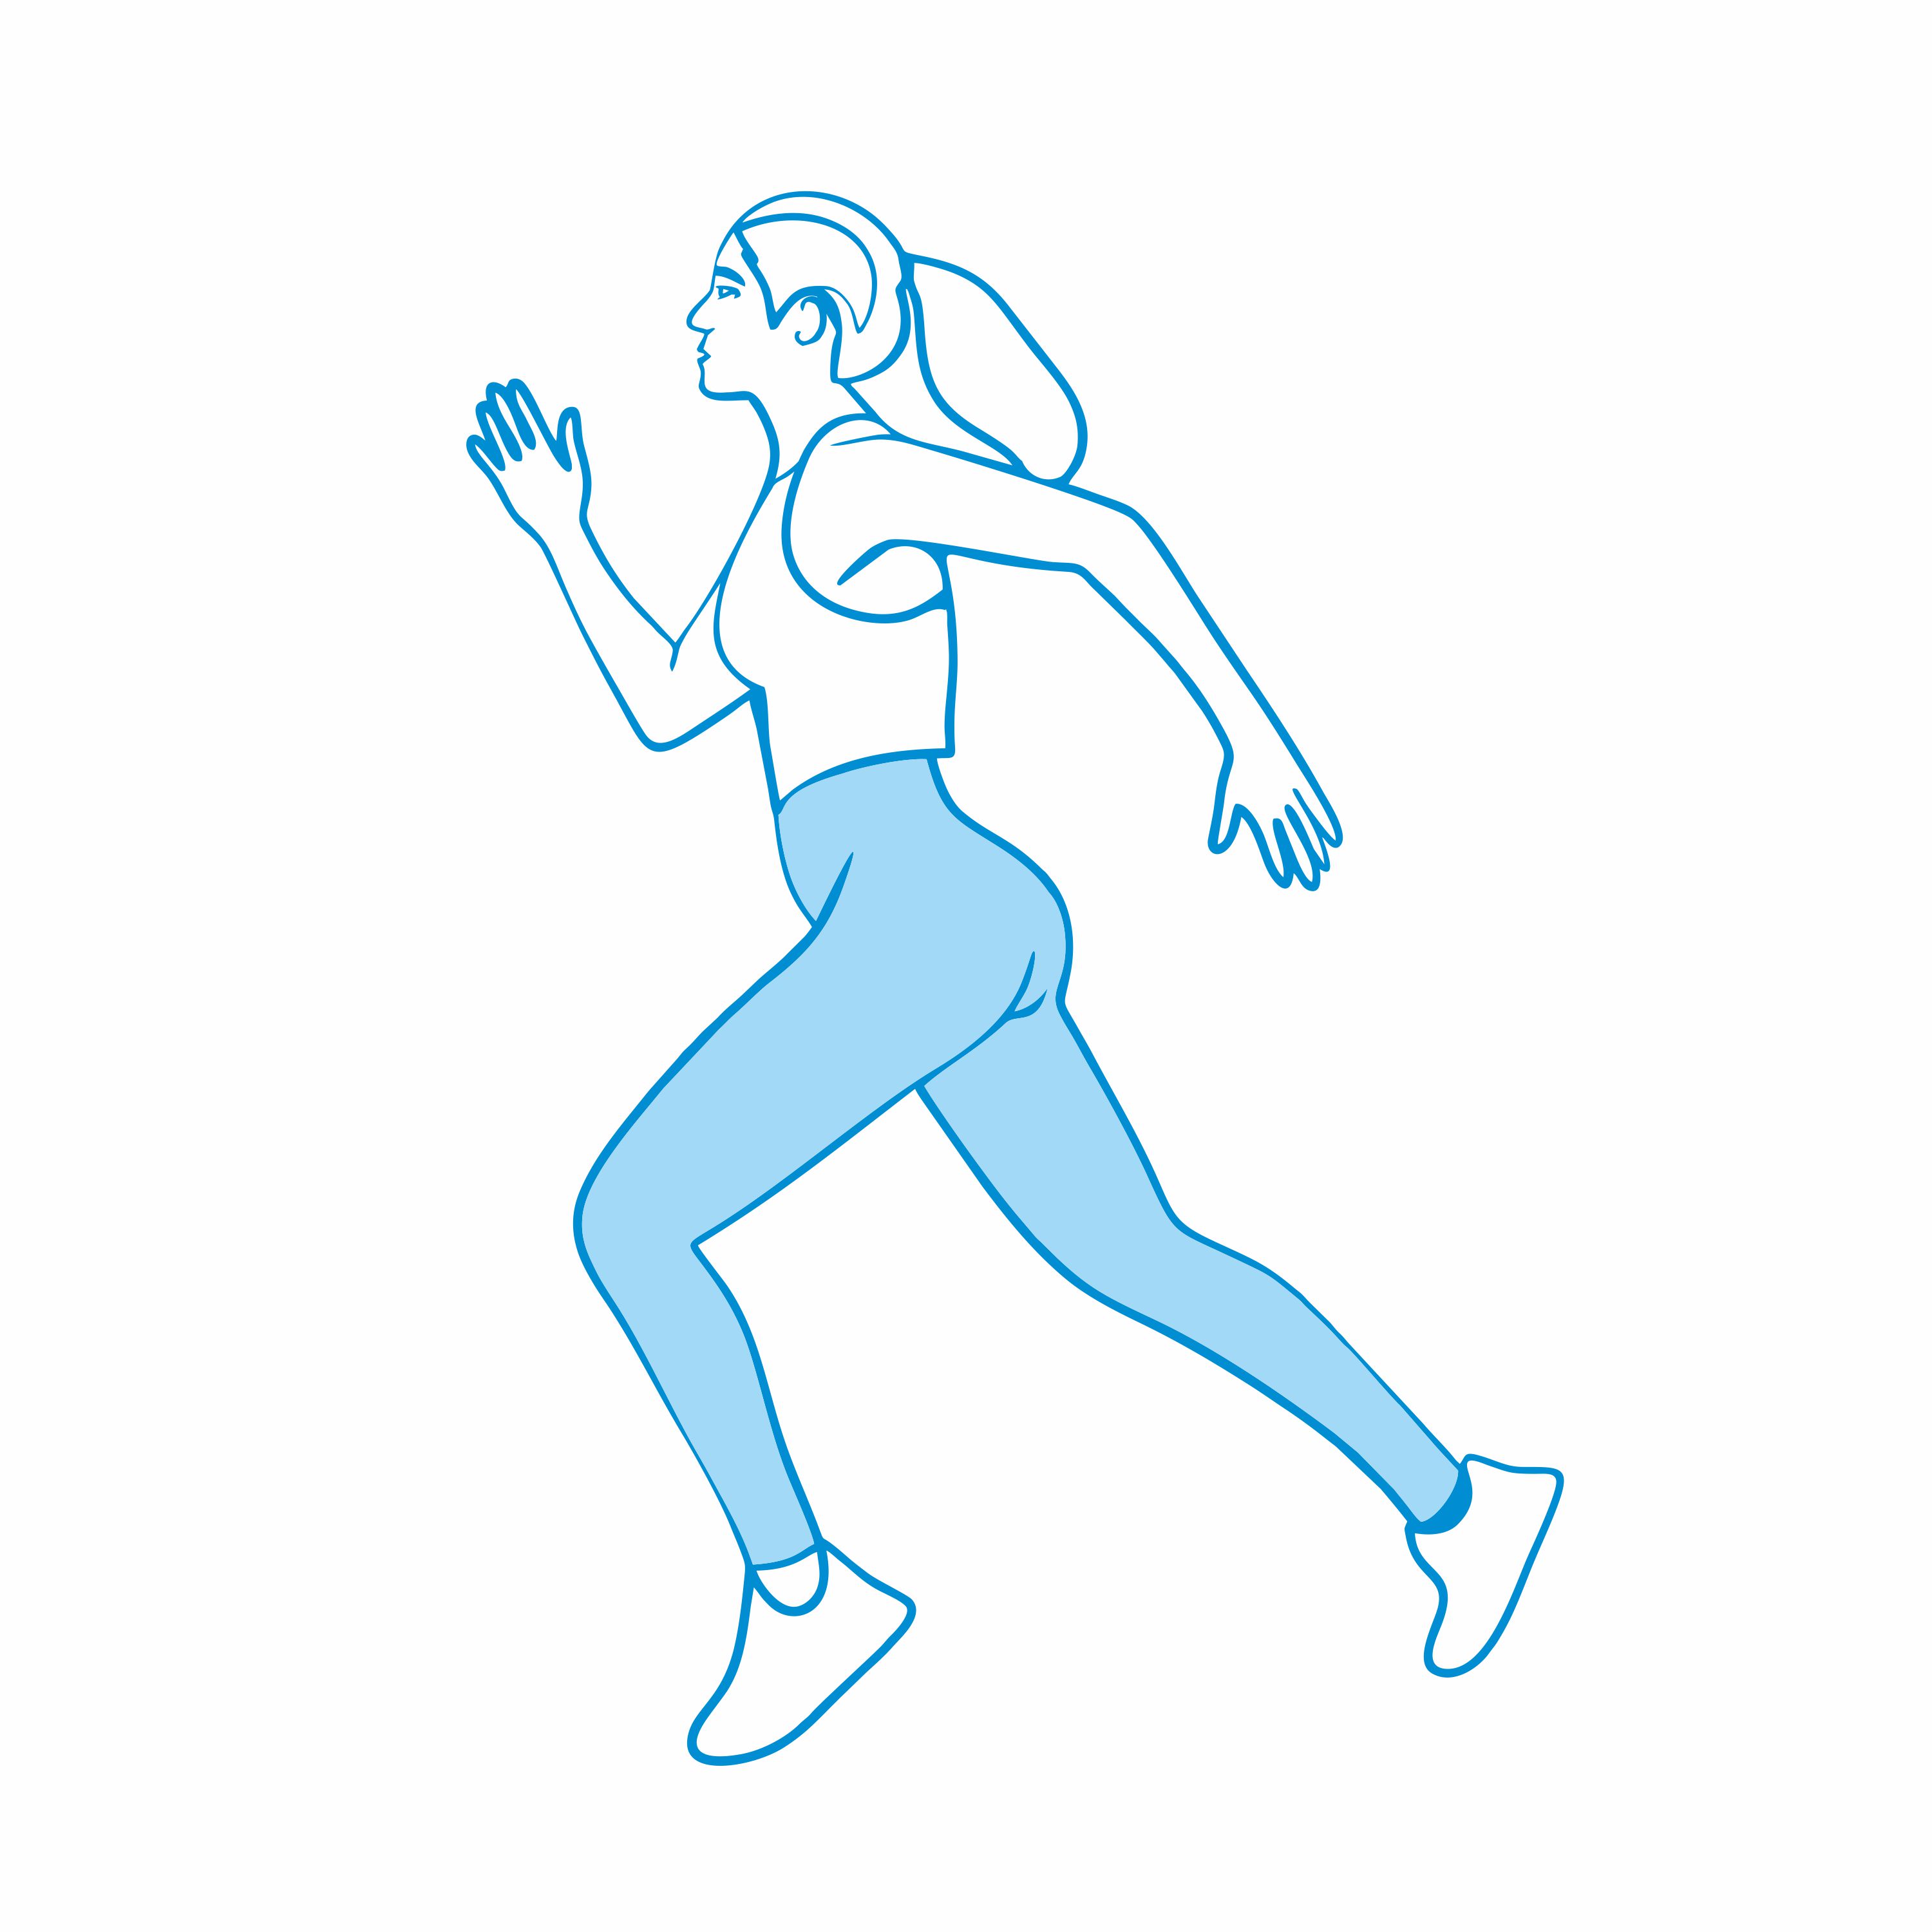 Higiena snu, dieta, bieganie, aktywność fizyczna